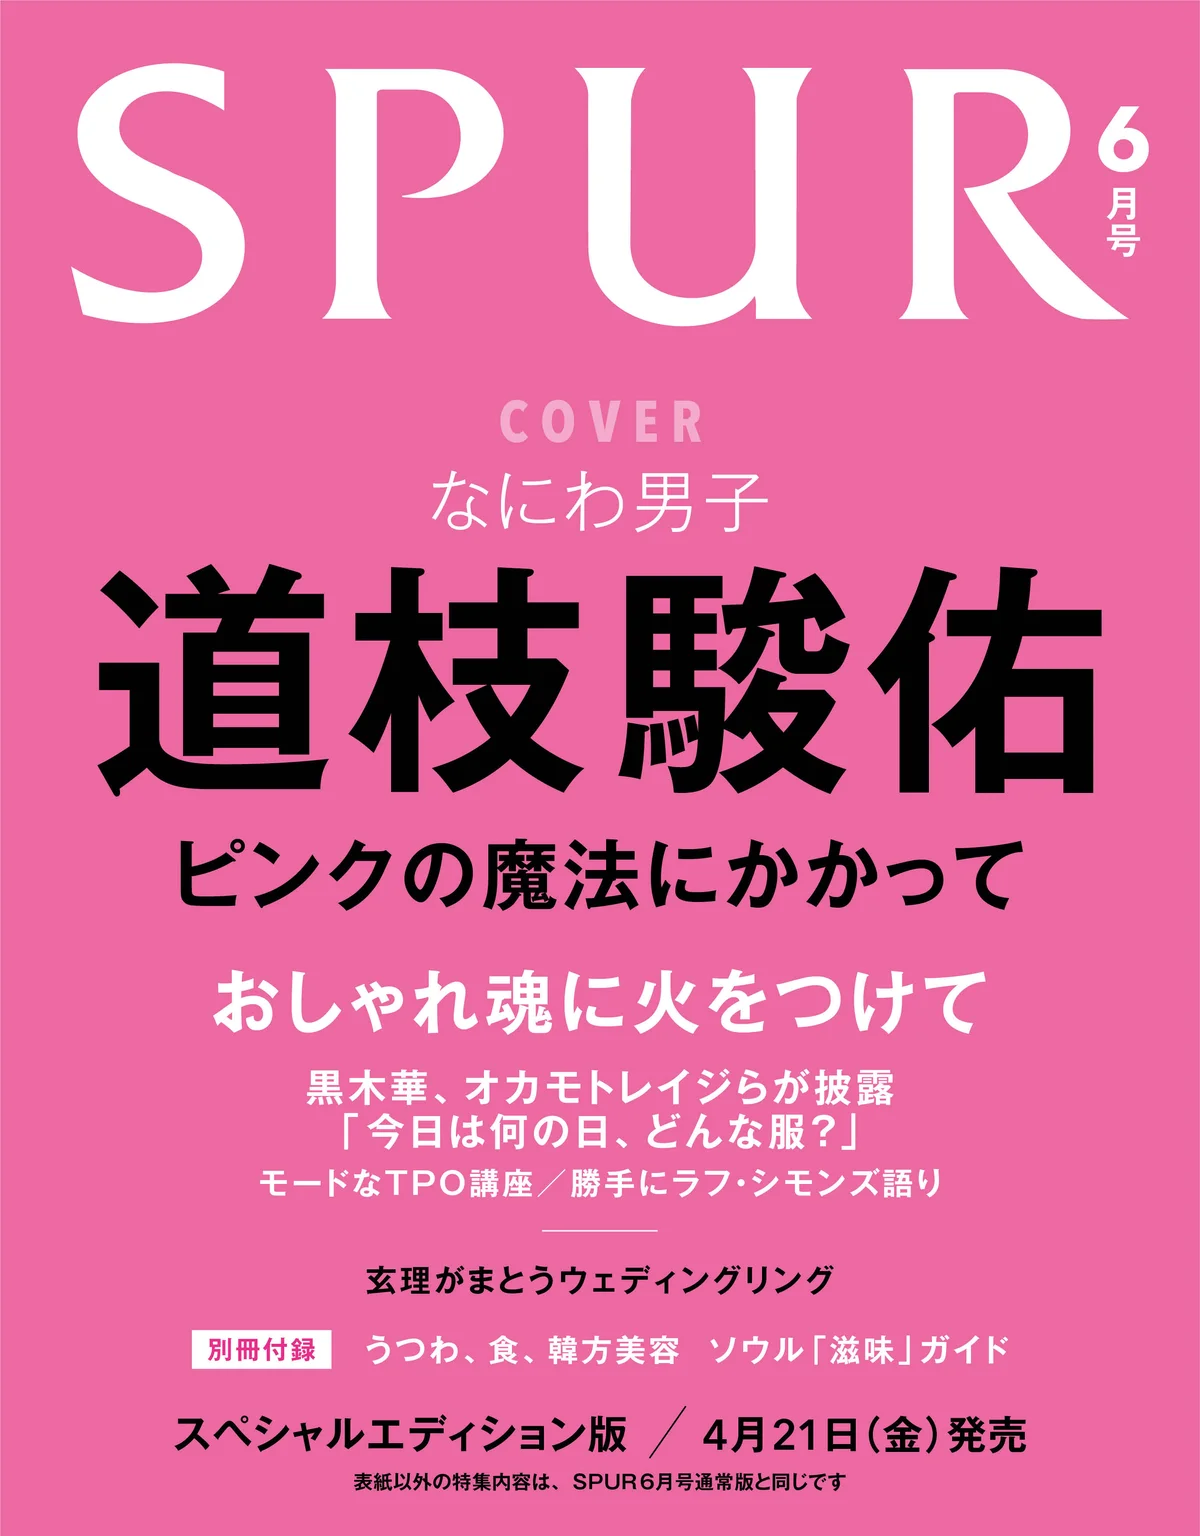 SPUR6月号 スペシャルエディション版カバー